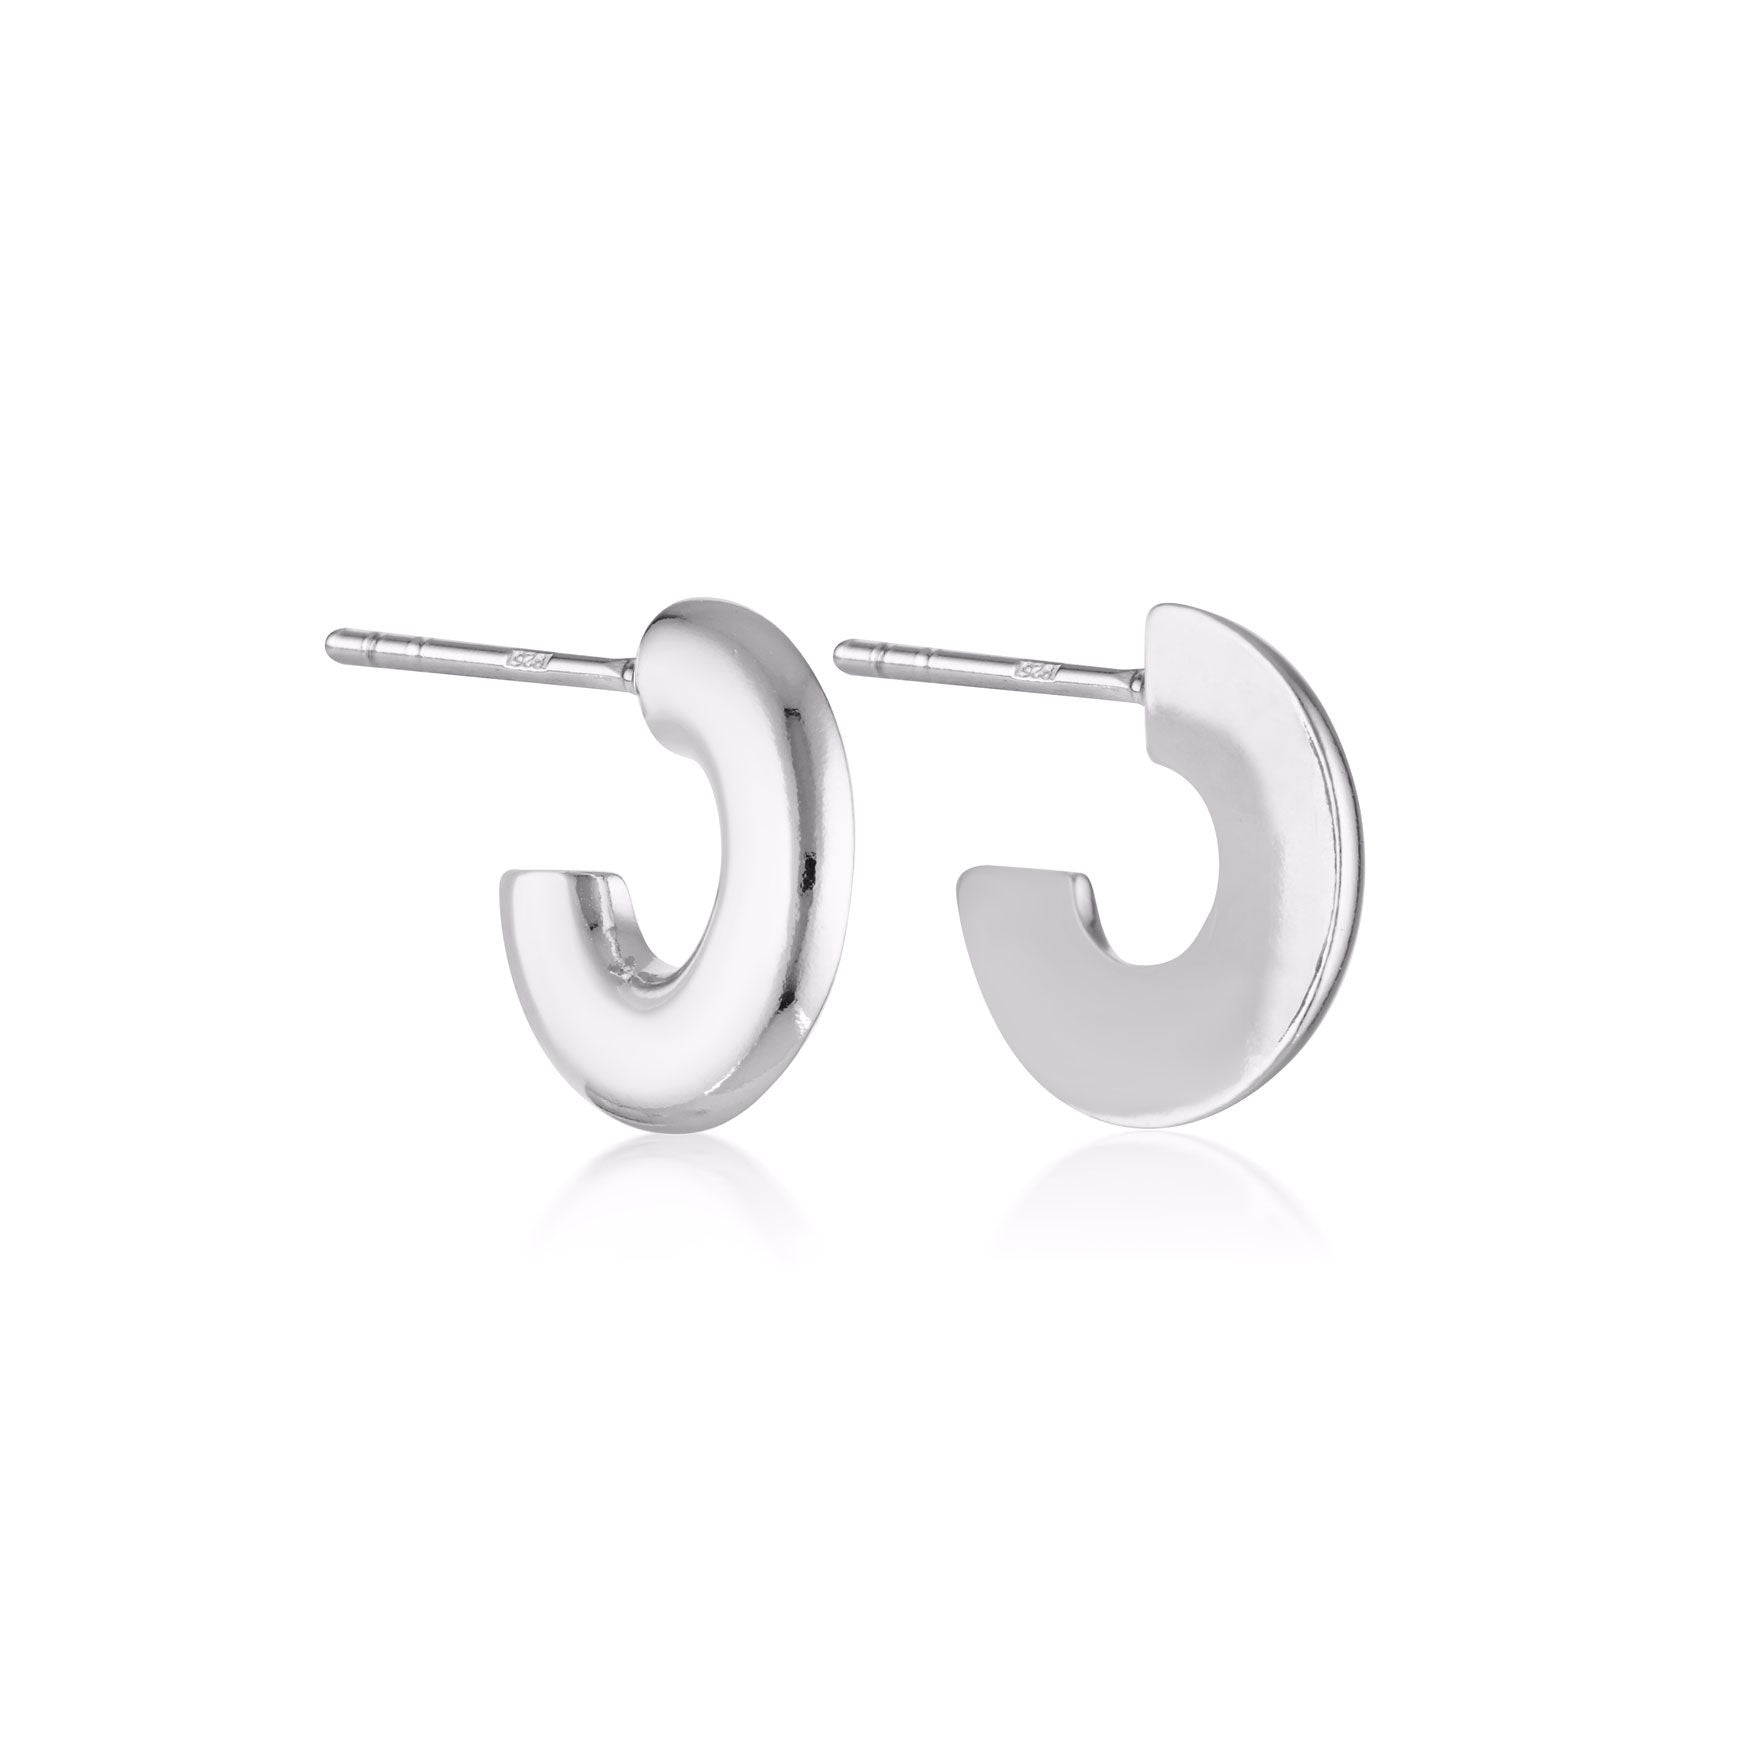 Linda Tahija Round Profile Hoop Earrings Silver